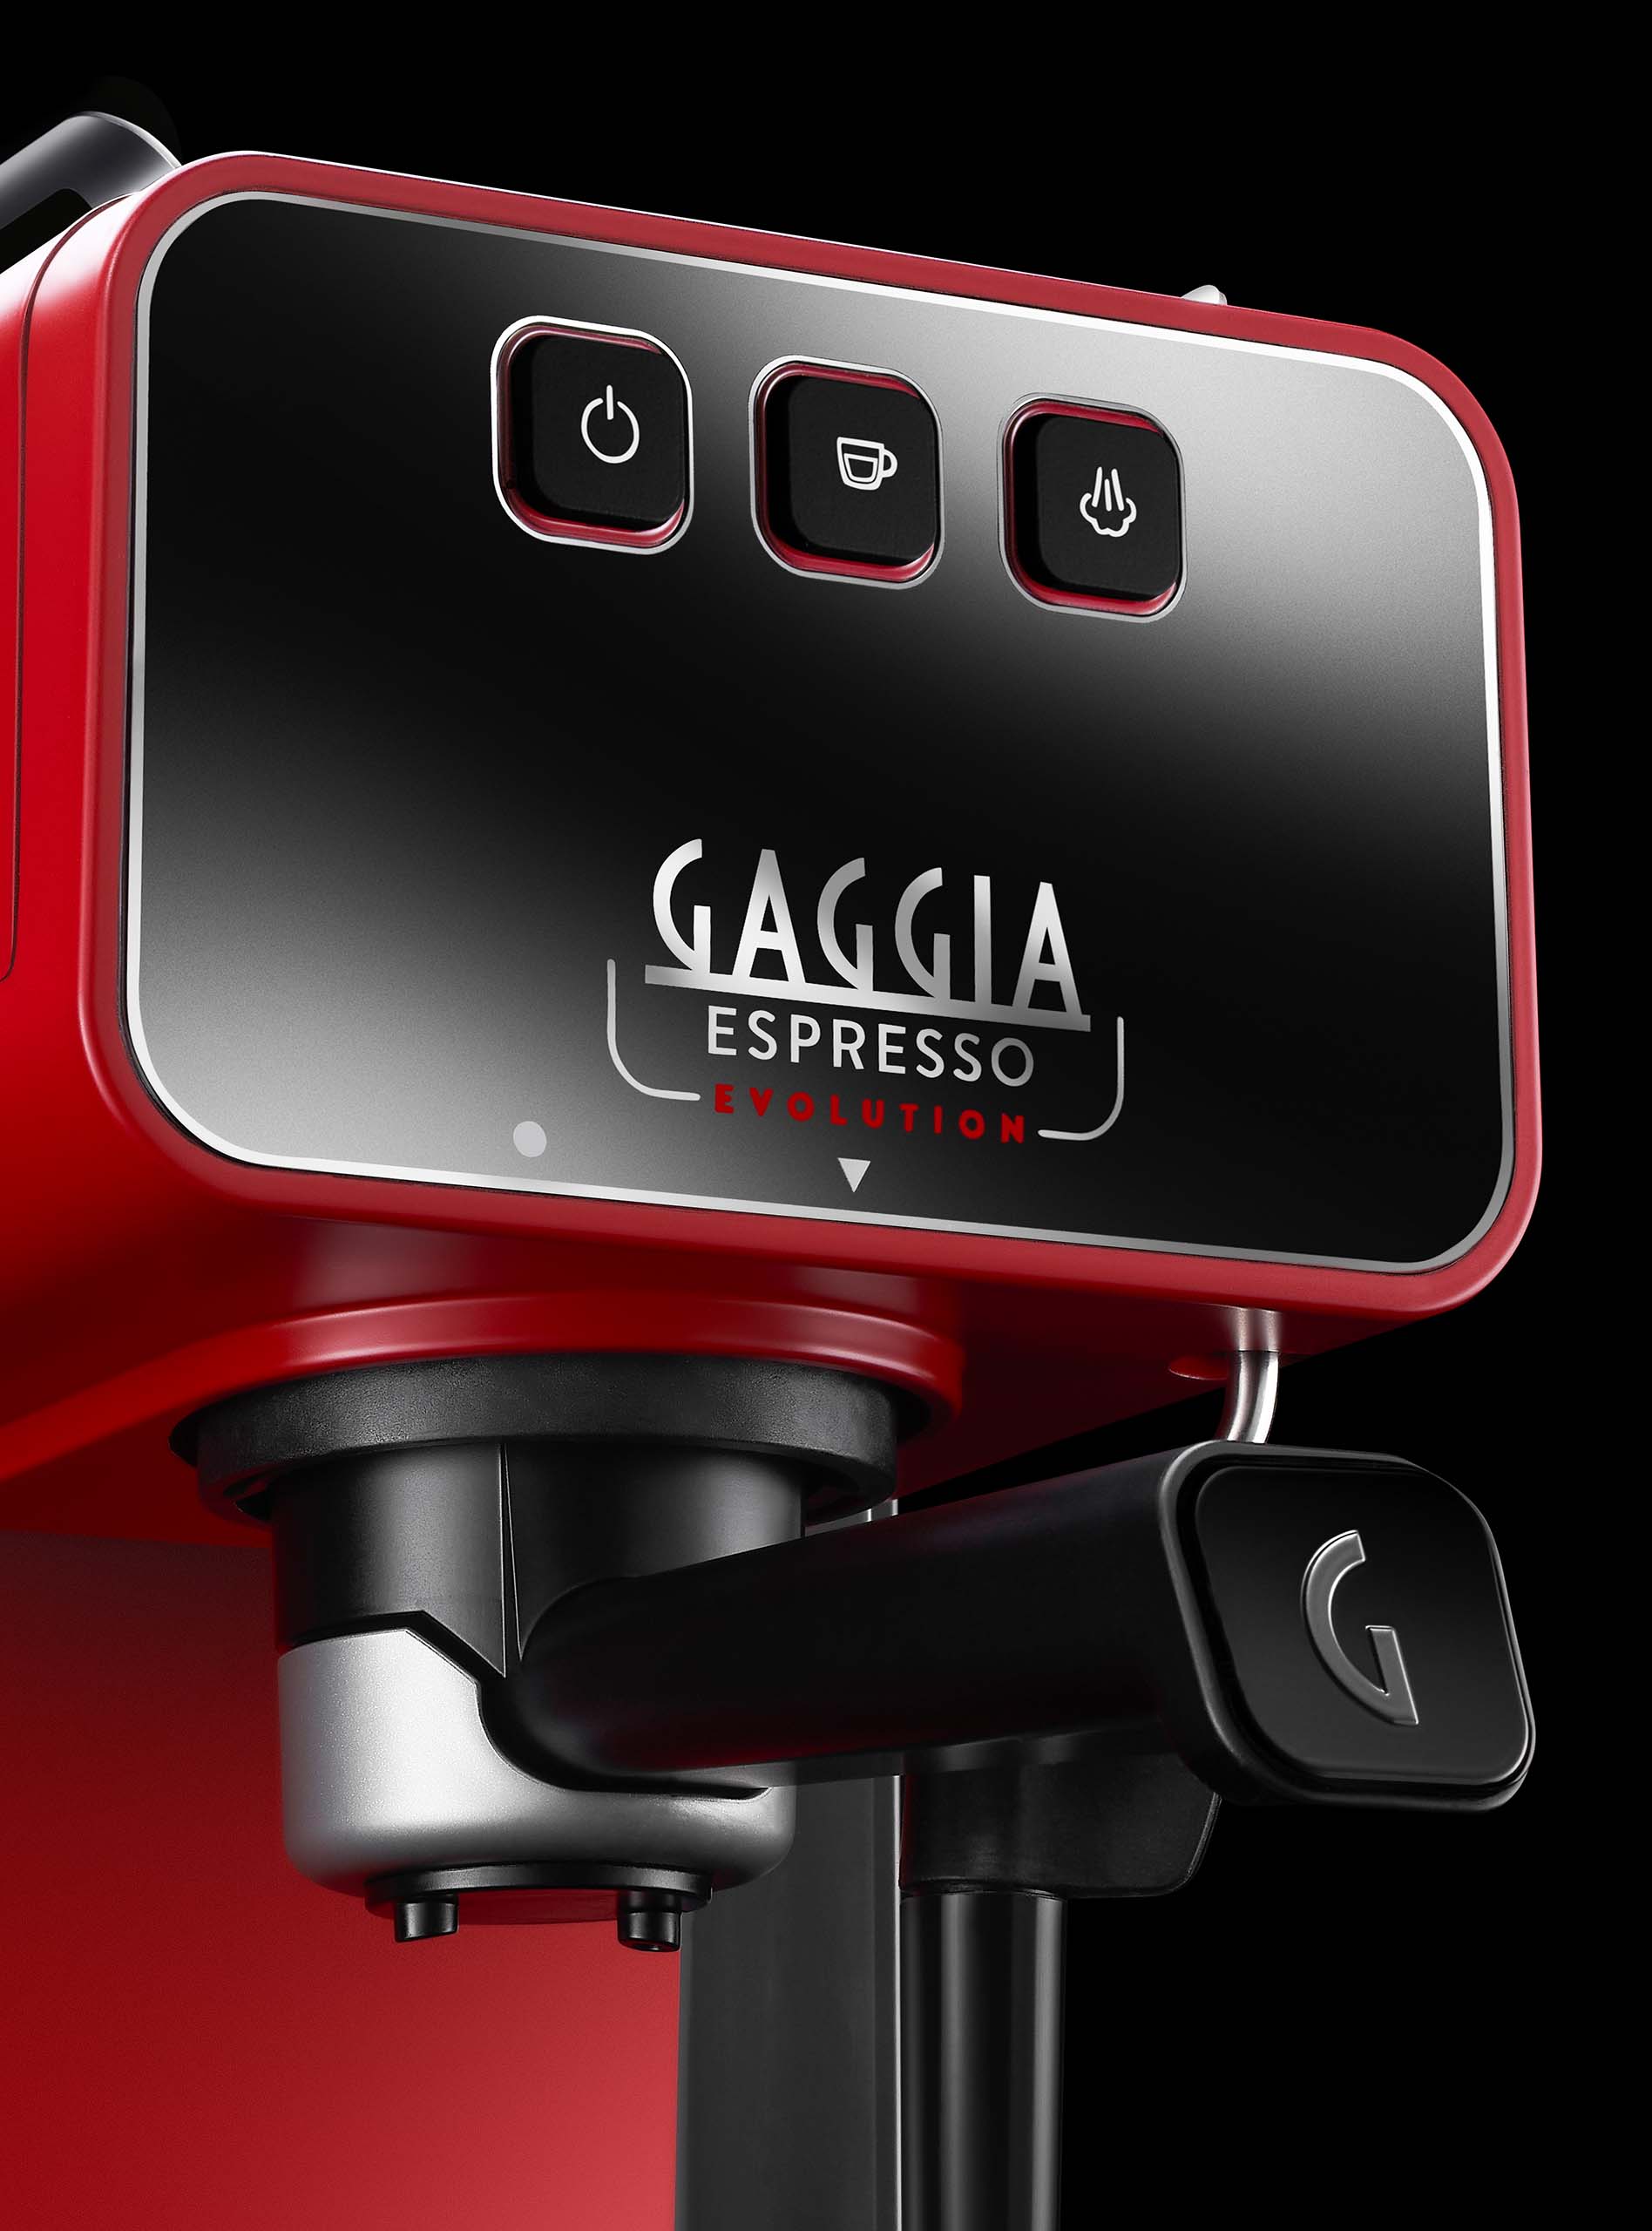 Gaggia R18423/11 GranGaggia Style Espresso Coffee Machine Black